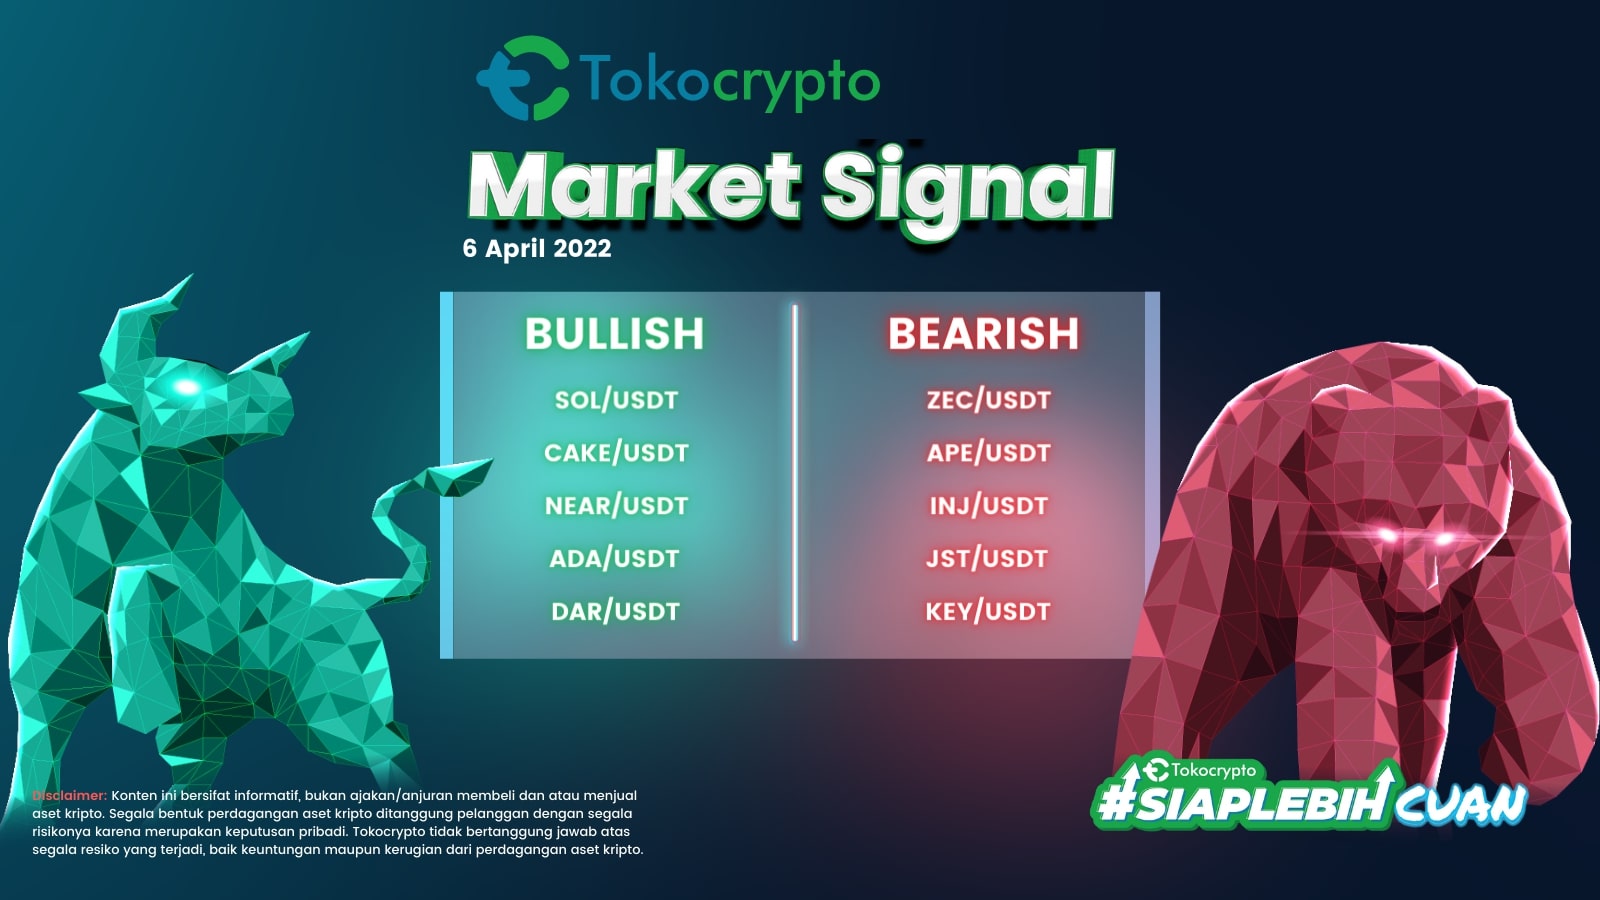 Ilustrasi Tokocrypto Market Signal 6 April 2022.